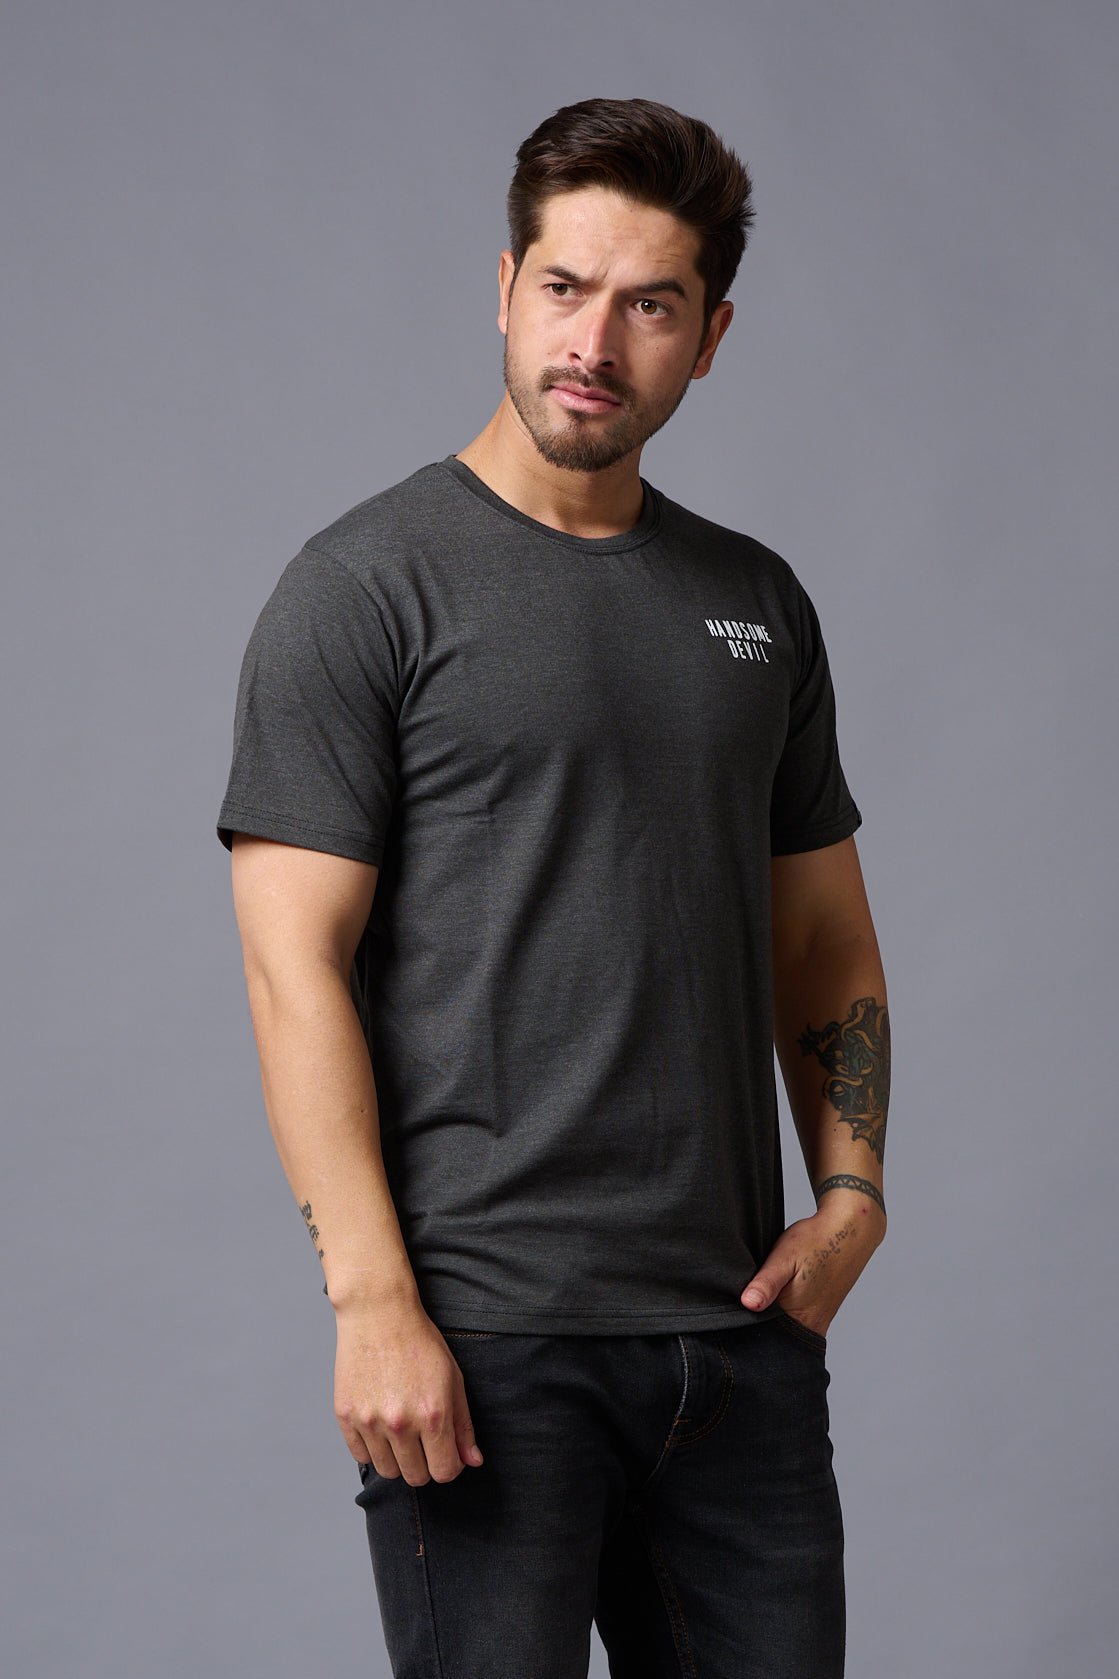 Handsome Devil Printed Oversized T-Shirt for Men - Go Devil